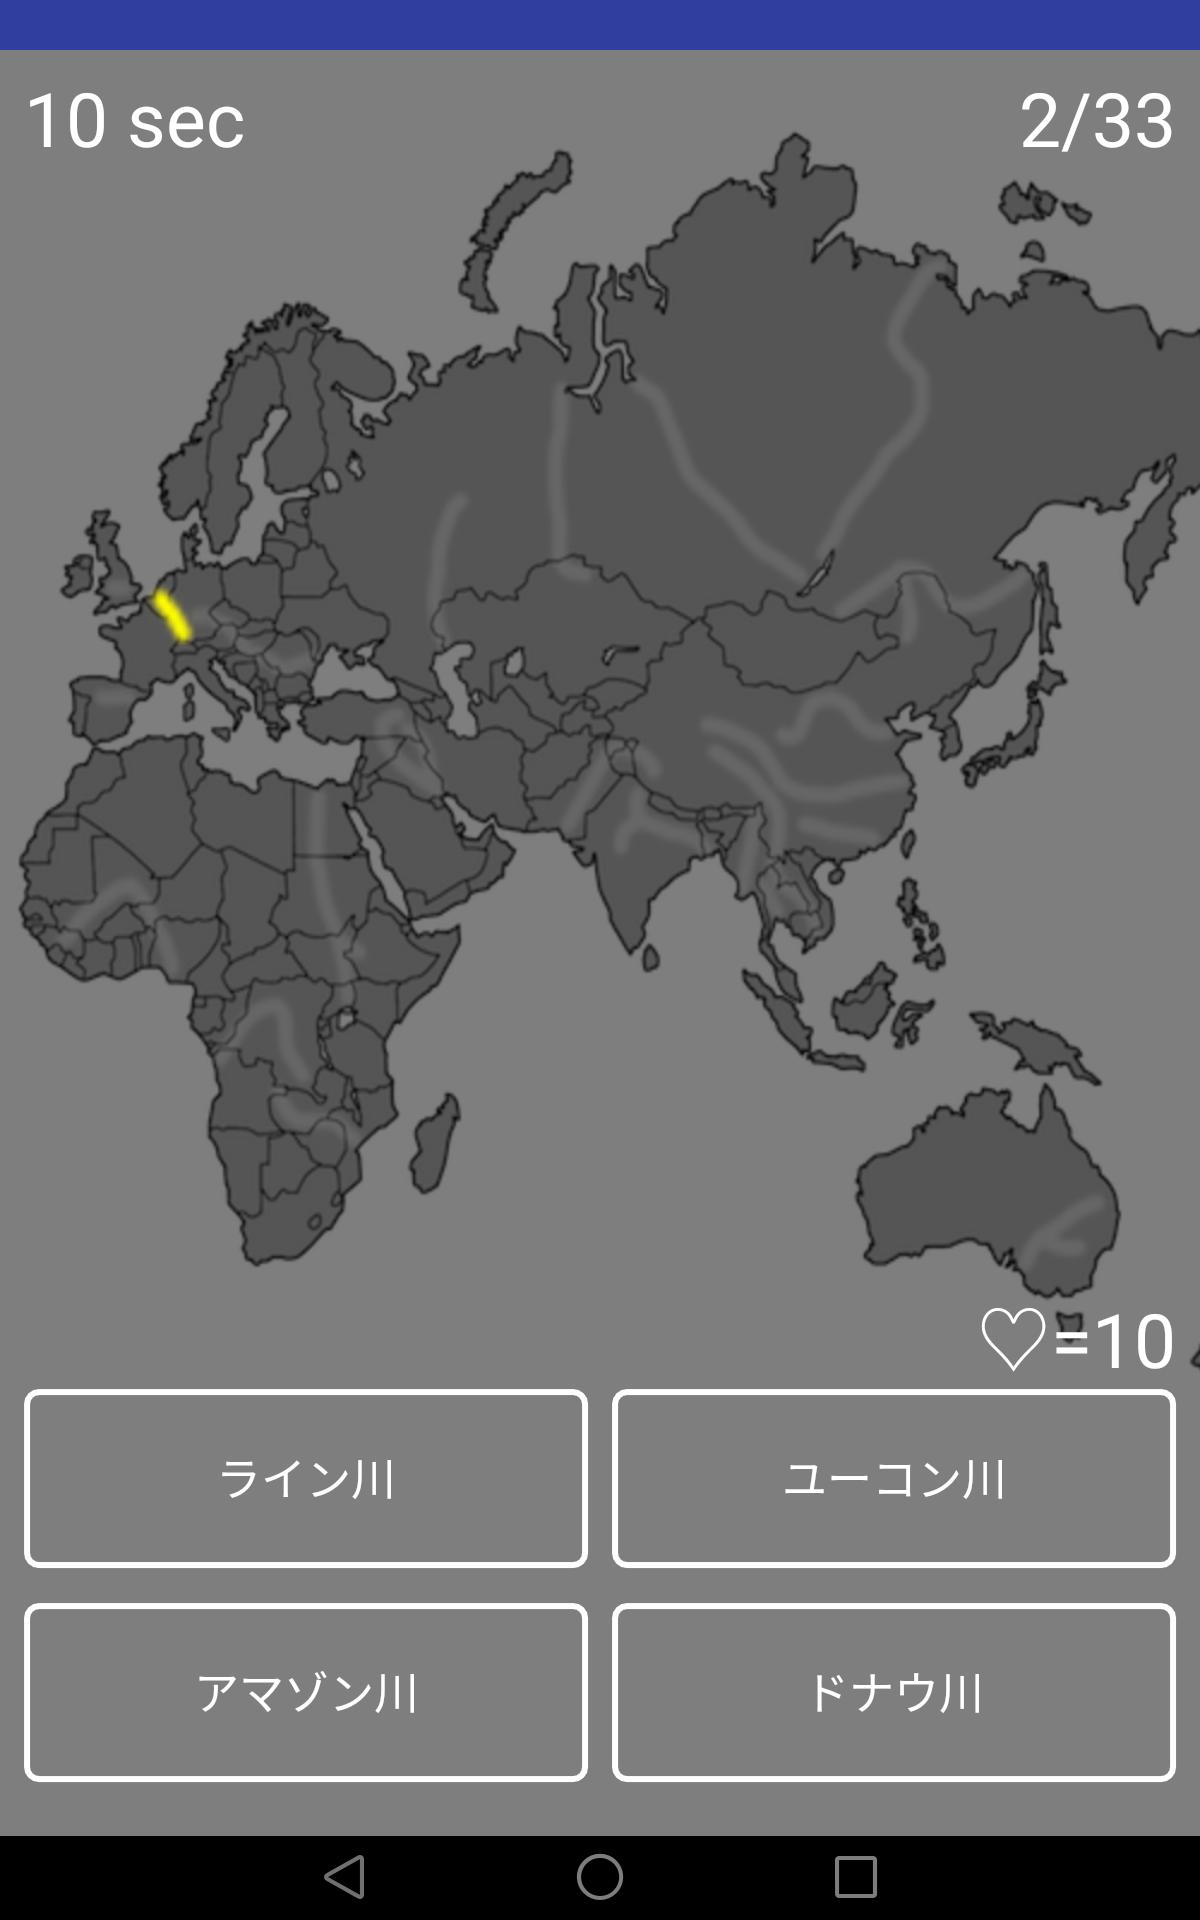 Android 用の 世界地理の位置や名前を覚えるクイズアプリ Apk をダウンロード